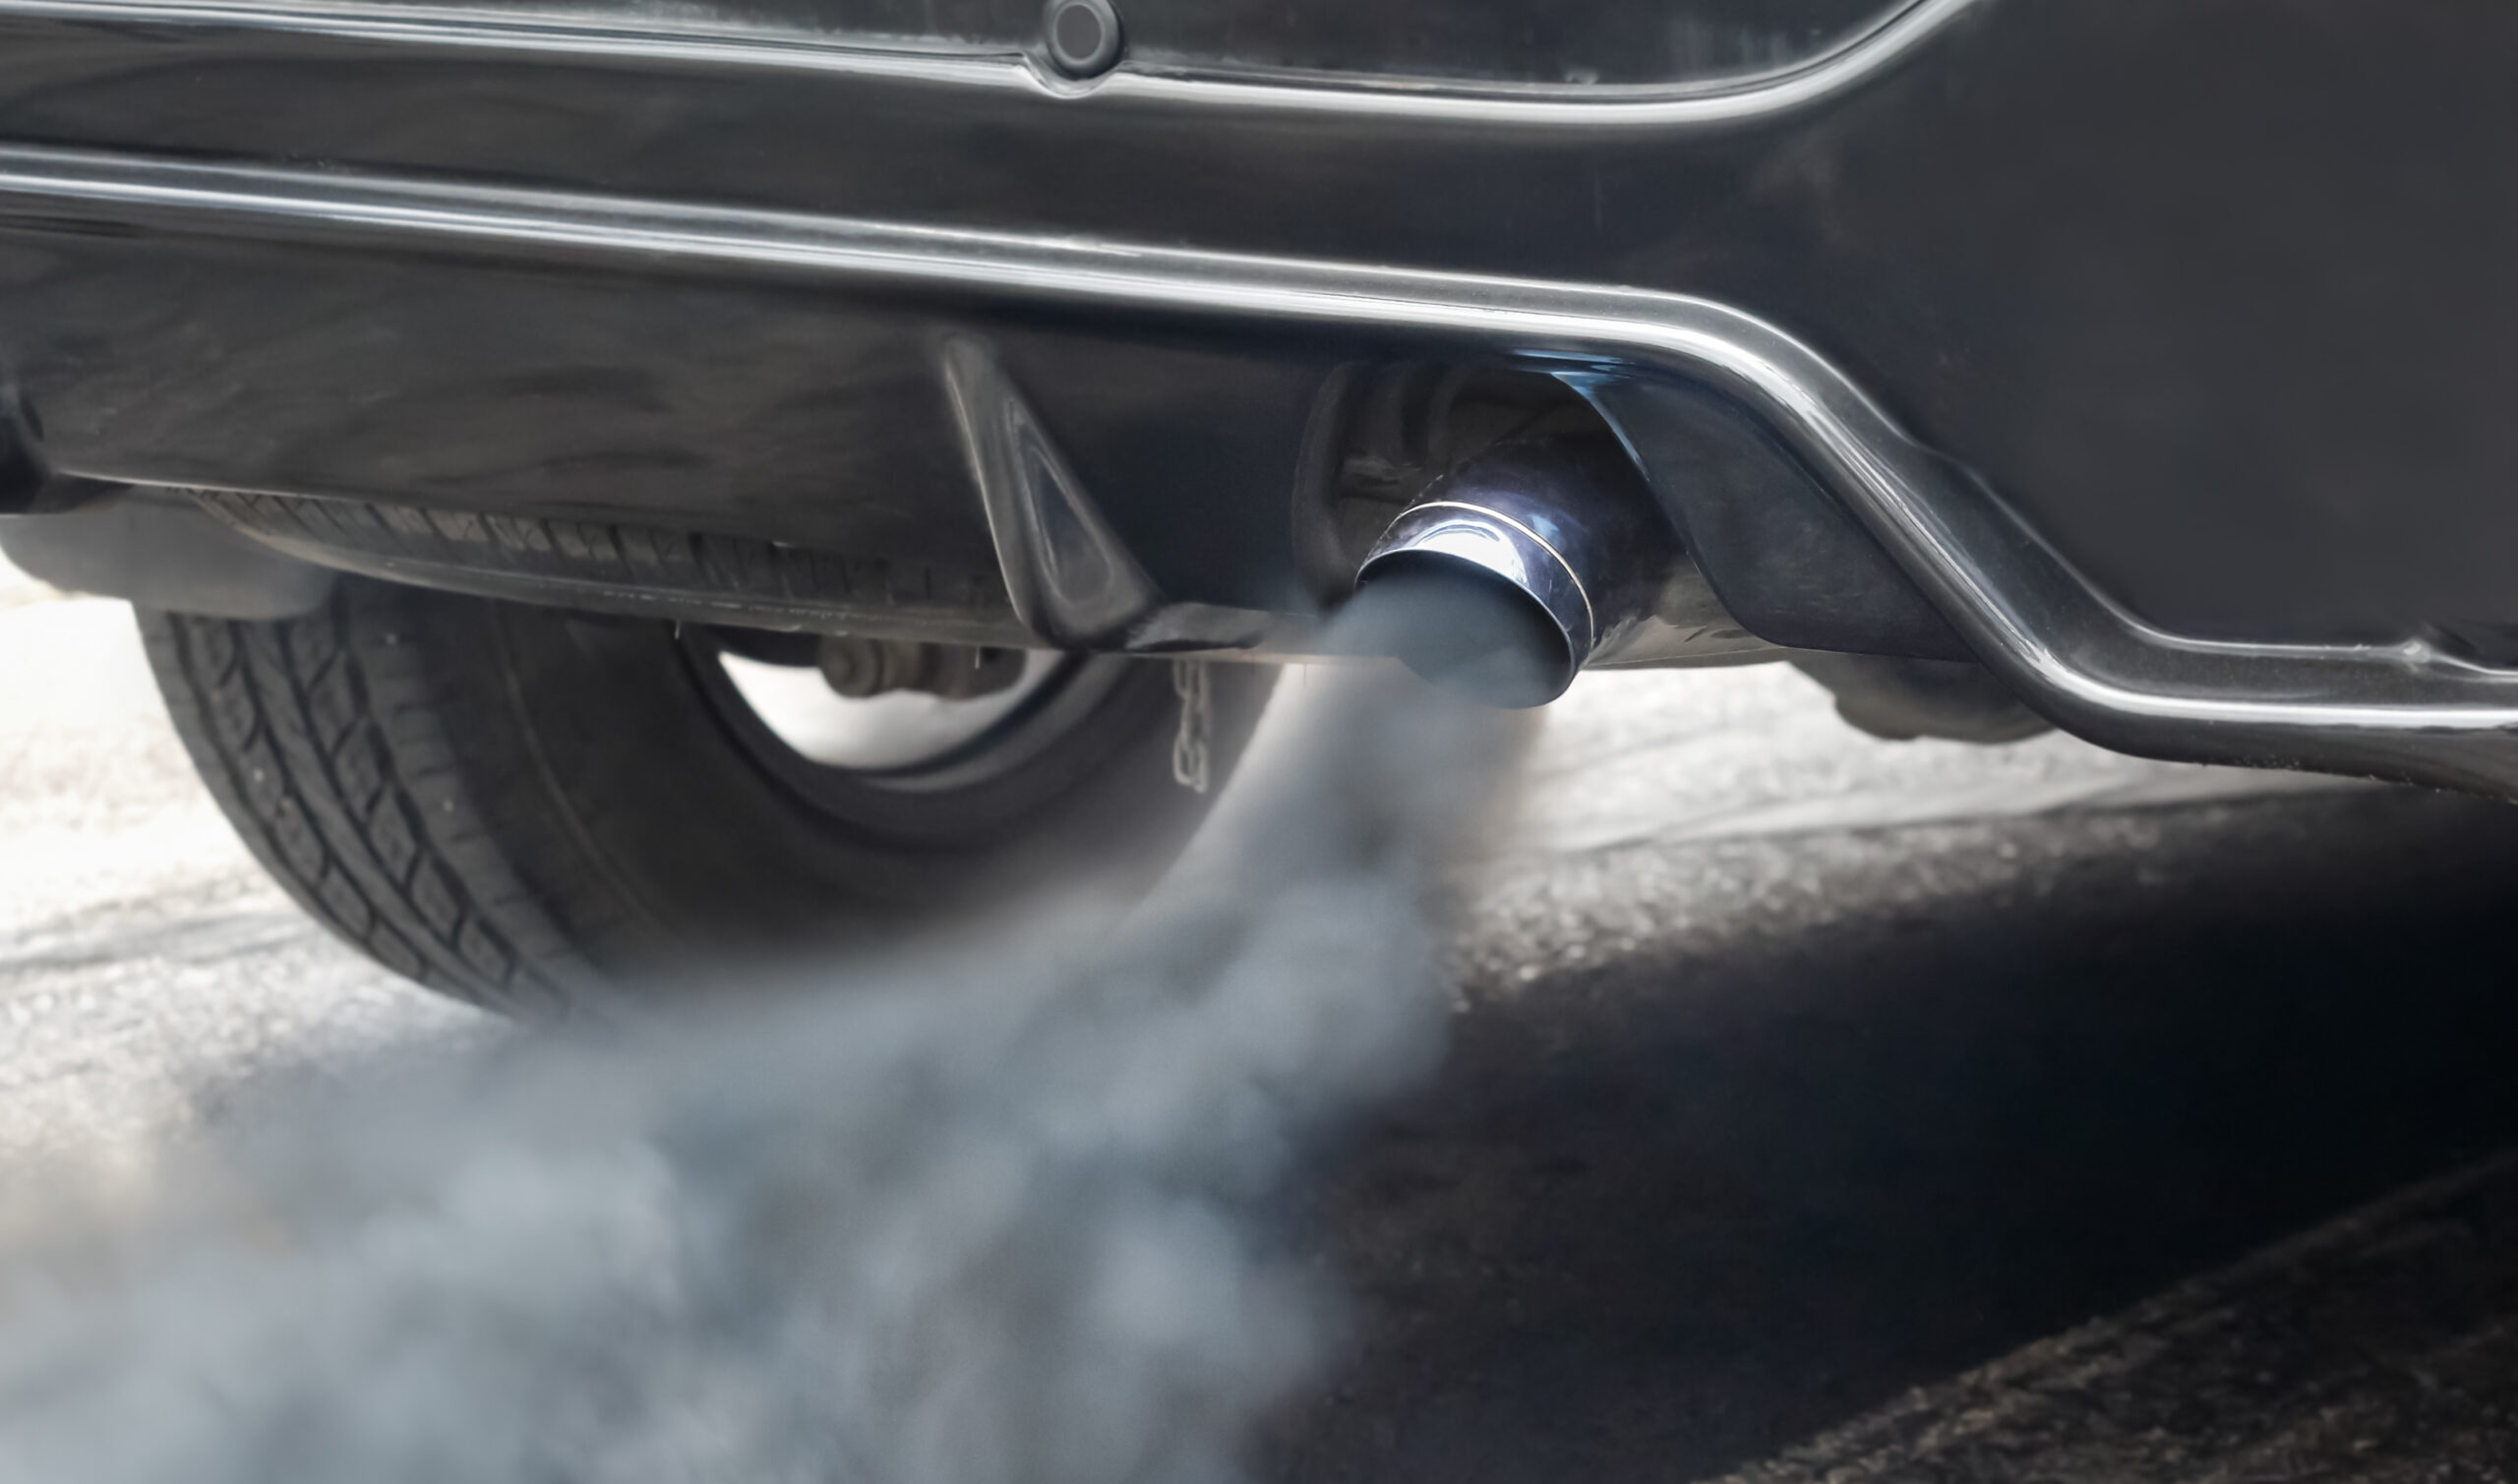 Imagen referencial. Como causante de estos elevados niveles de contaminación el estudio apunta principalmente a las emisiones de los vehículos. Foto: Freepik